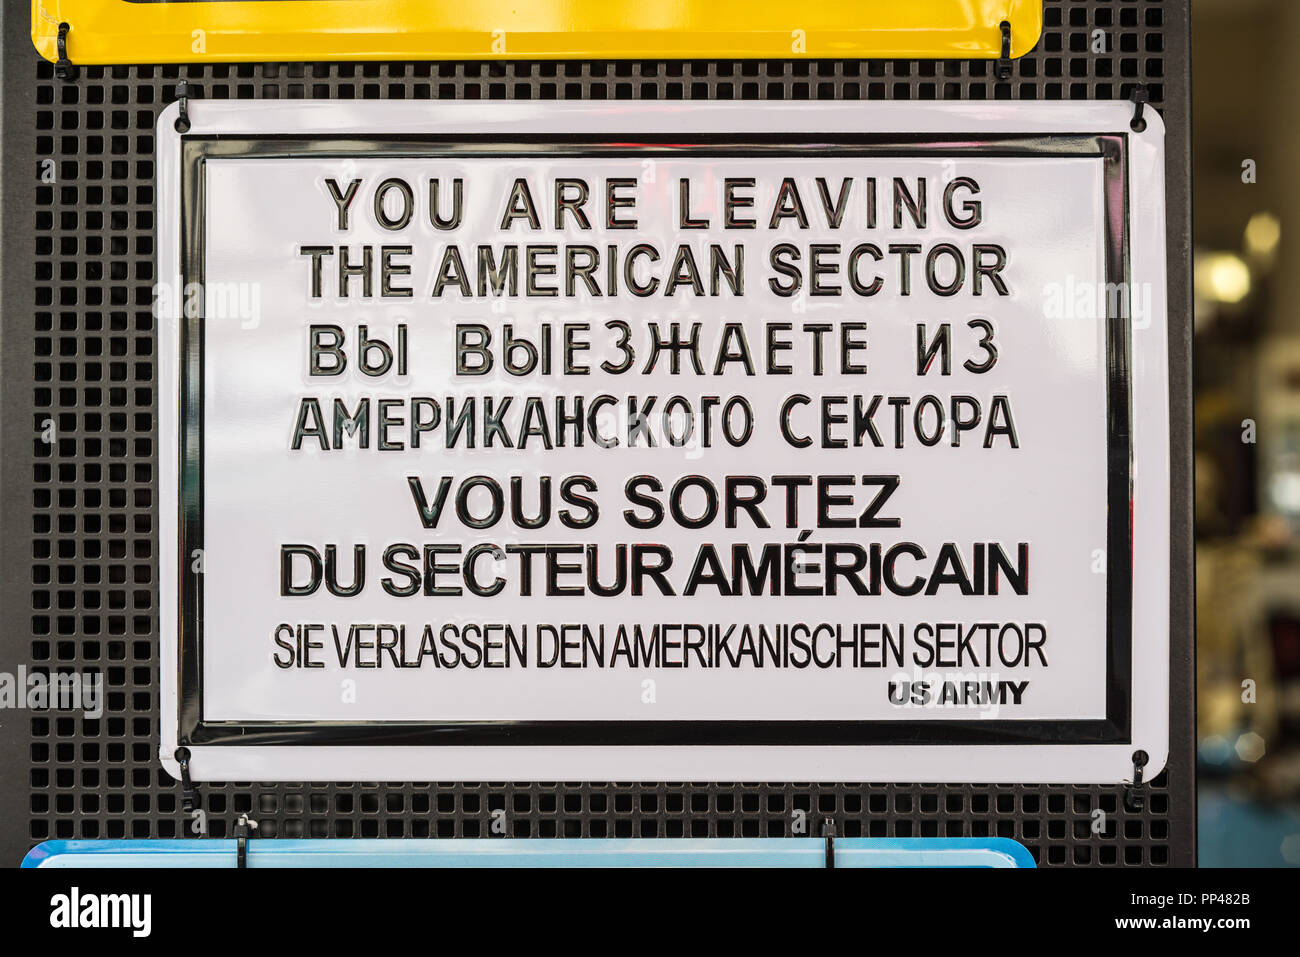 Berlin, Allemagne - le 28 mai 2017 : Vous quittez le secteur américain - Historique panneau près du Checkpoint Charlie à Berlin, Allemagne (plaque souvenir). Banque D'Images